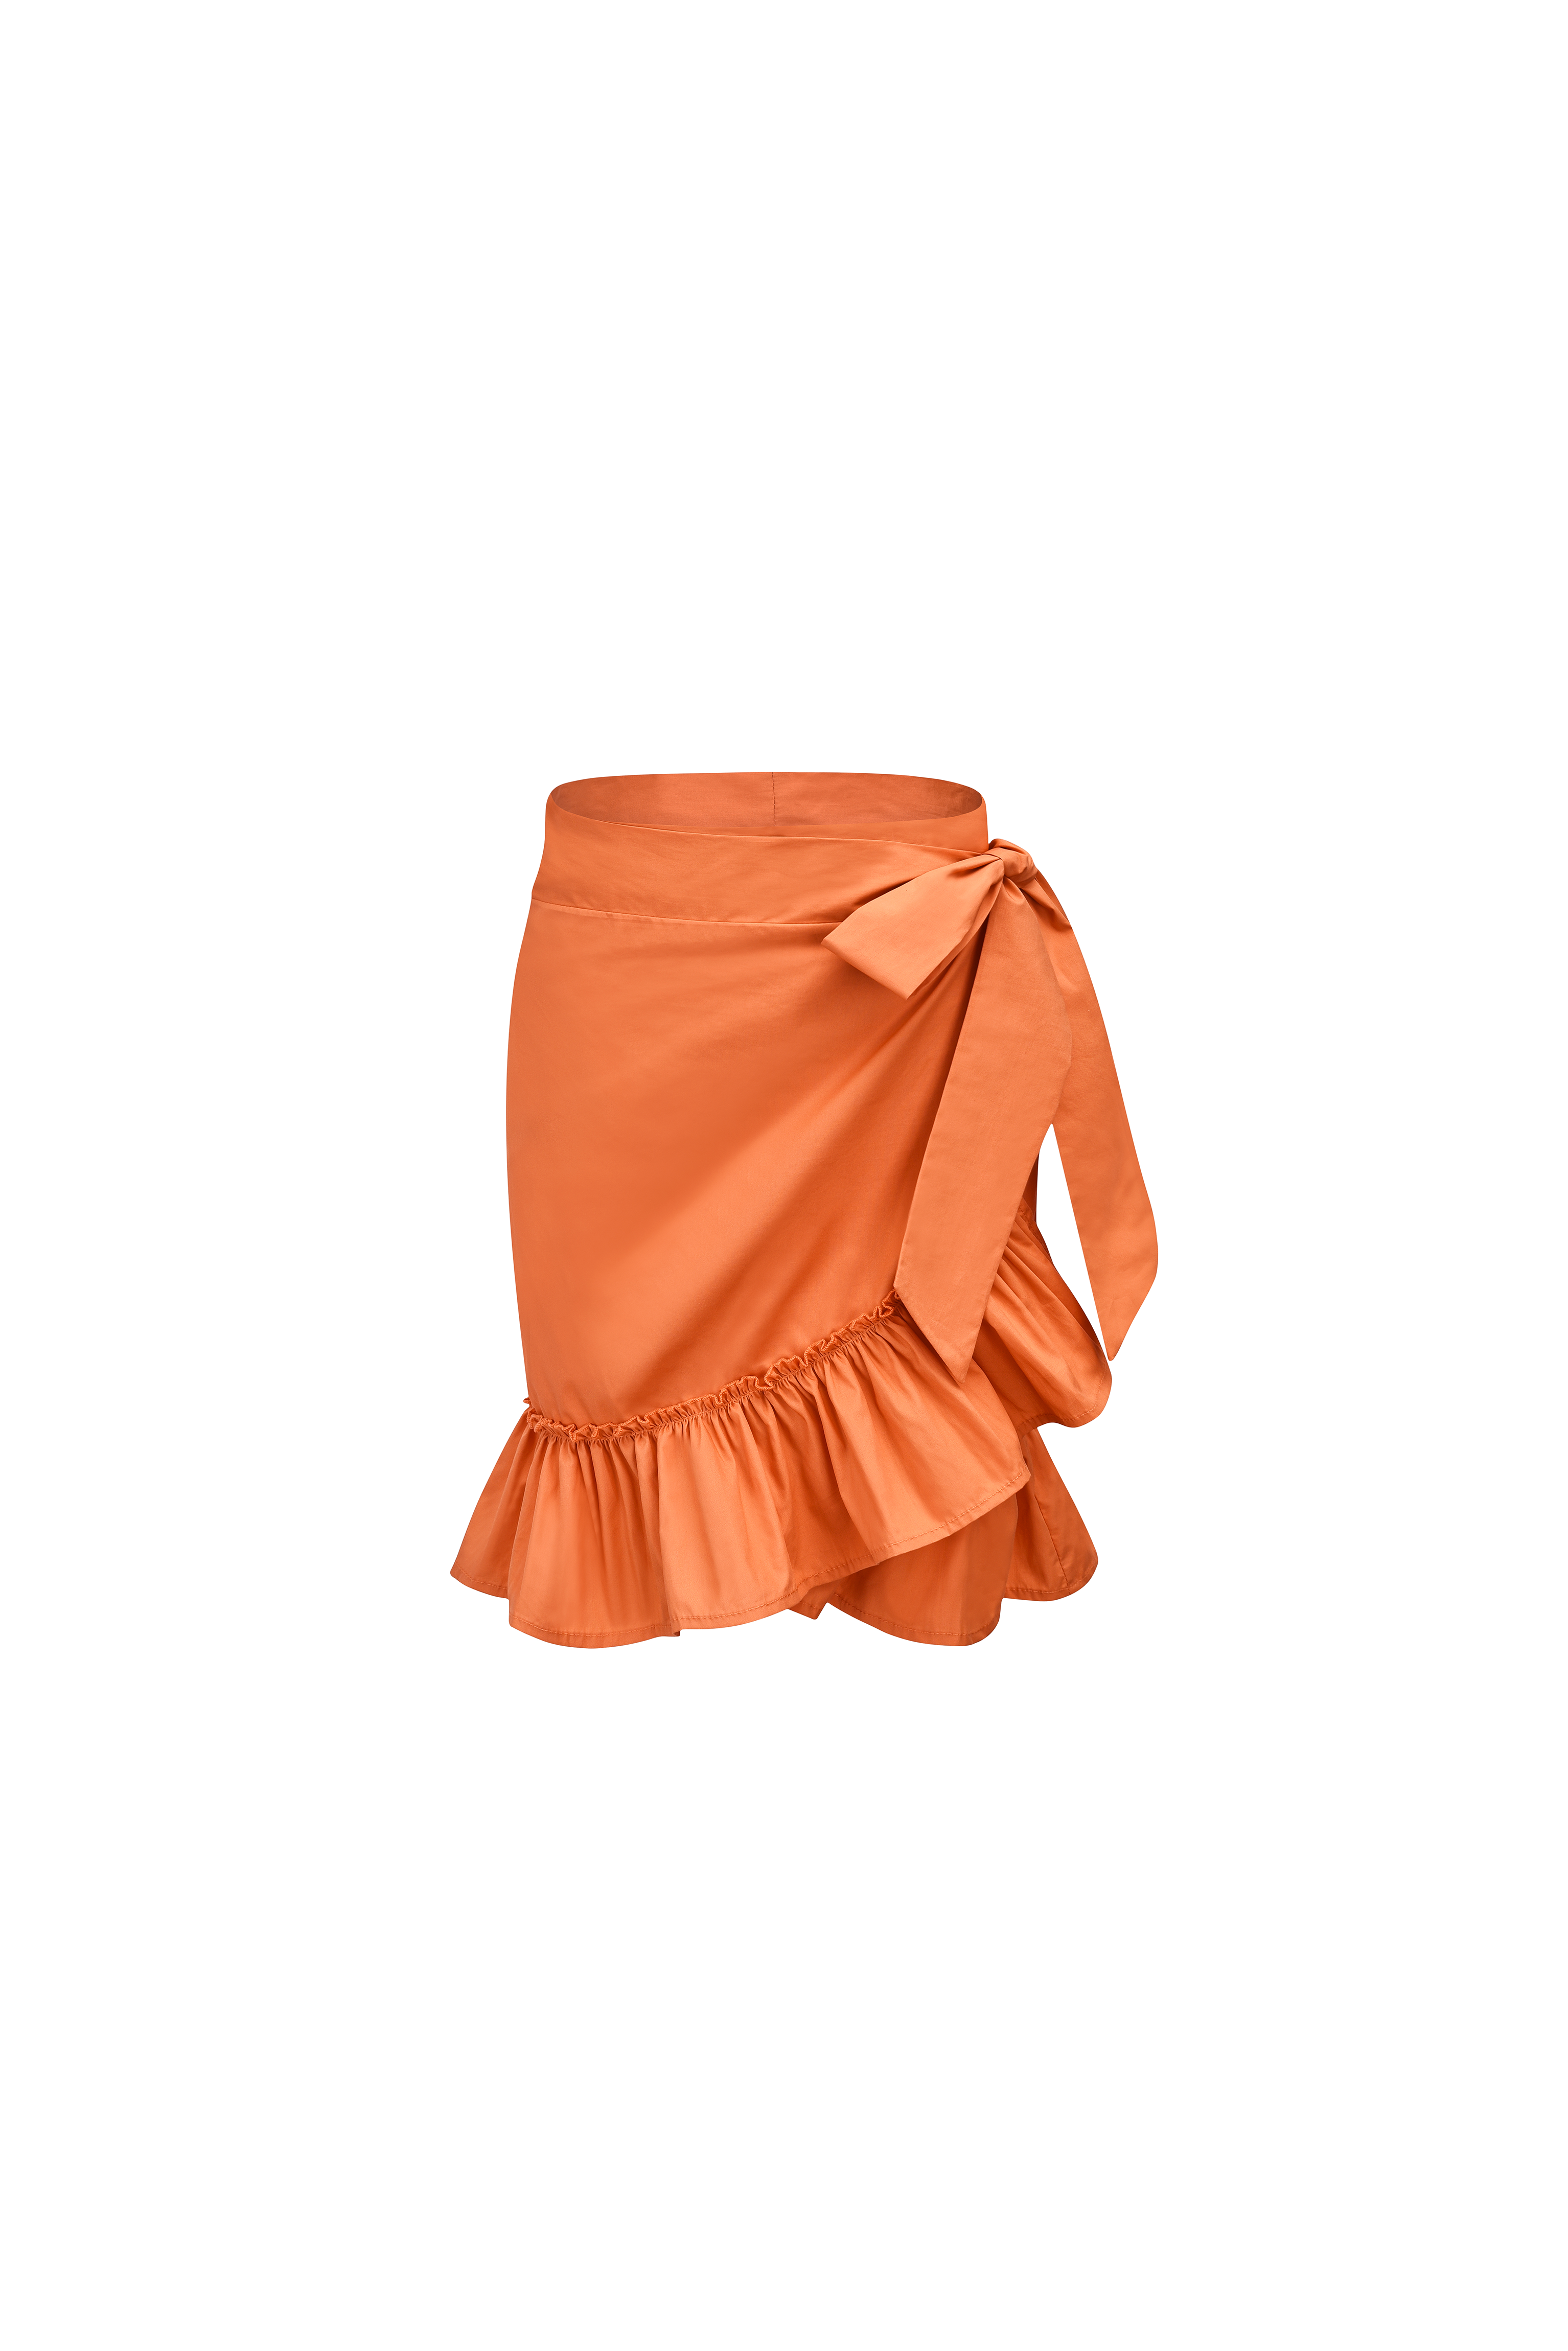 Stevie Orange Wrap Skirt